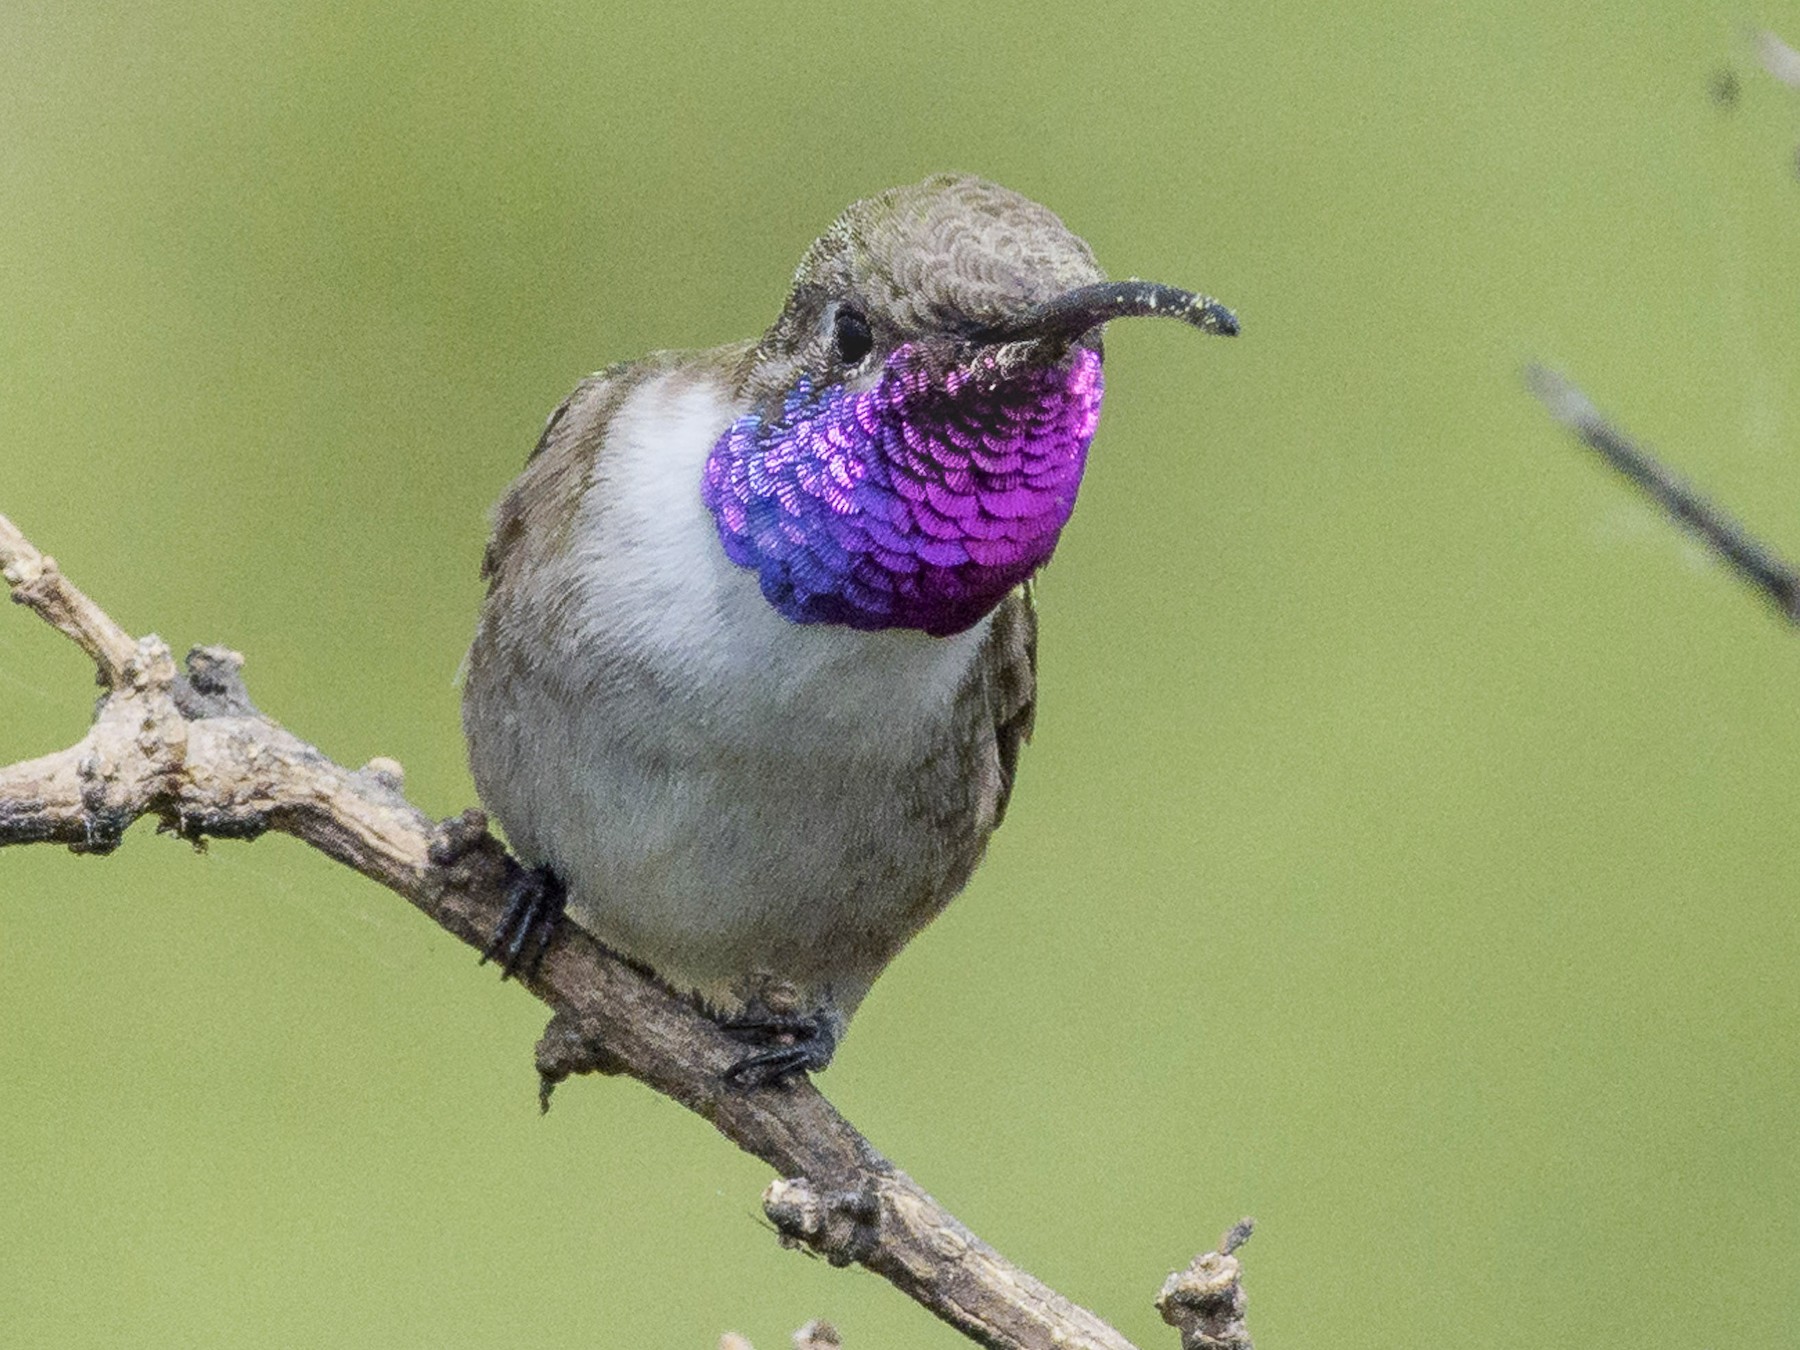 Oasis Hummingbird - VERONICA ARAYA GARCIA